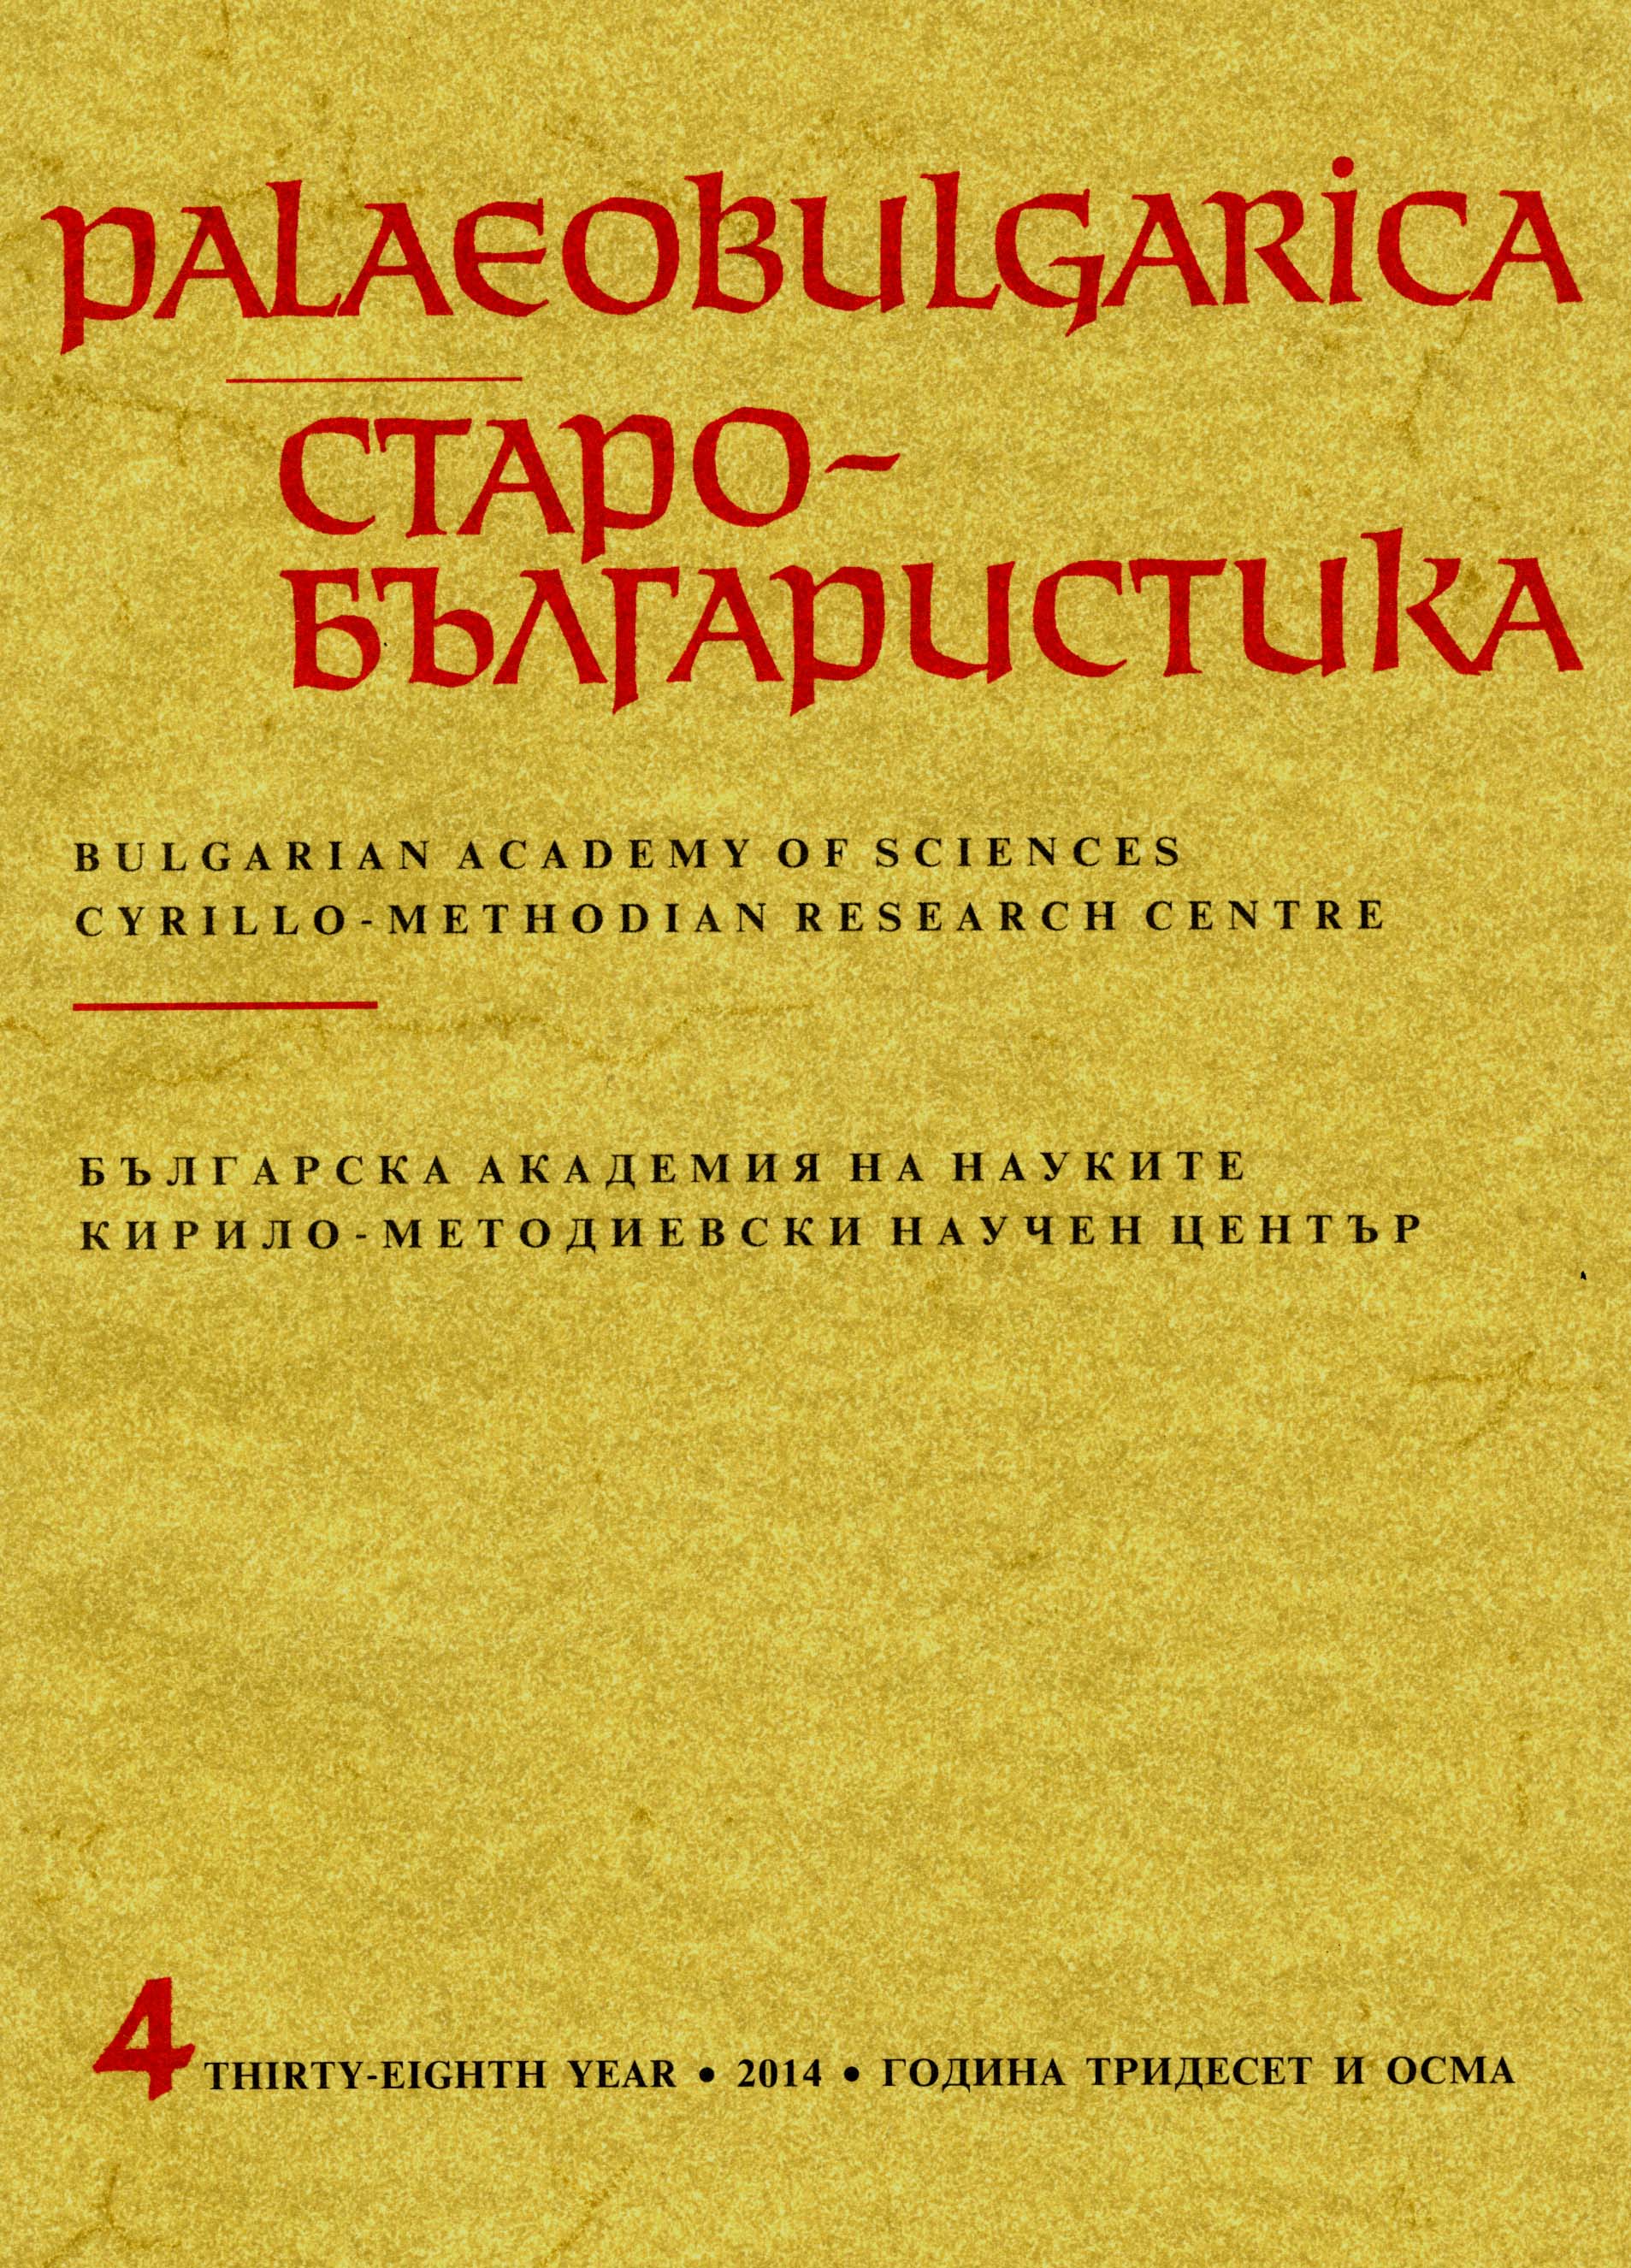 Книжовен език на народна основа ли е павликянската книжнина от втората половина на ХVІІІ век?